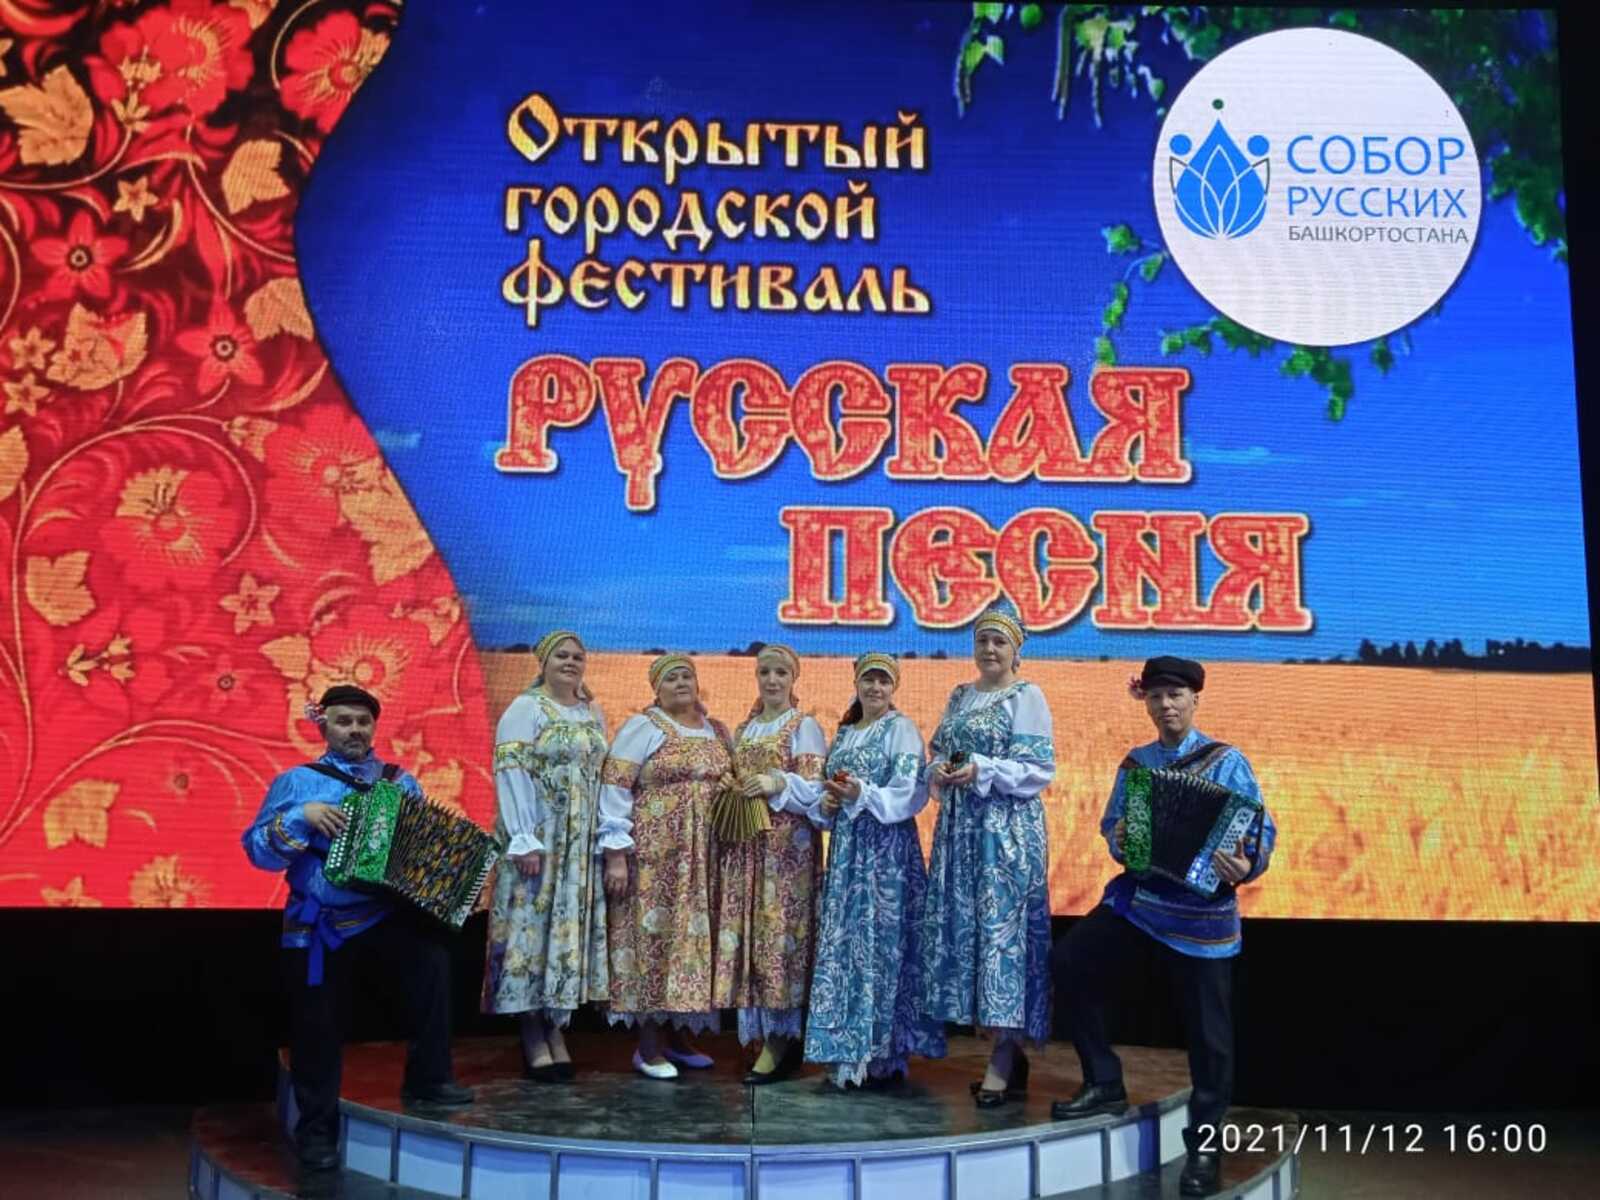 Ансамбли Дуванского района приняли участие в фестивале «Русская песня».